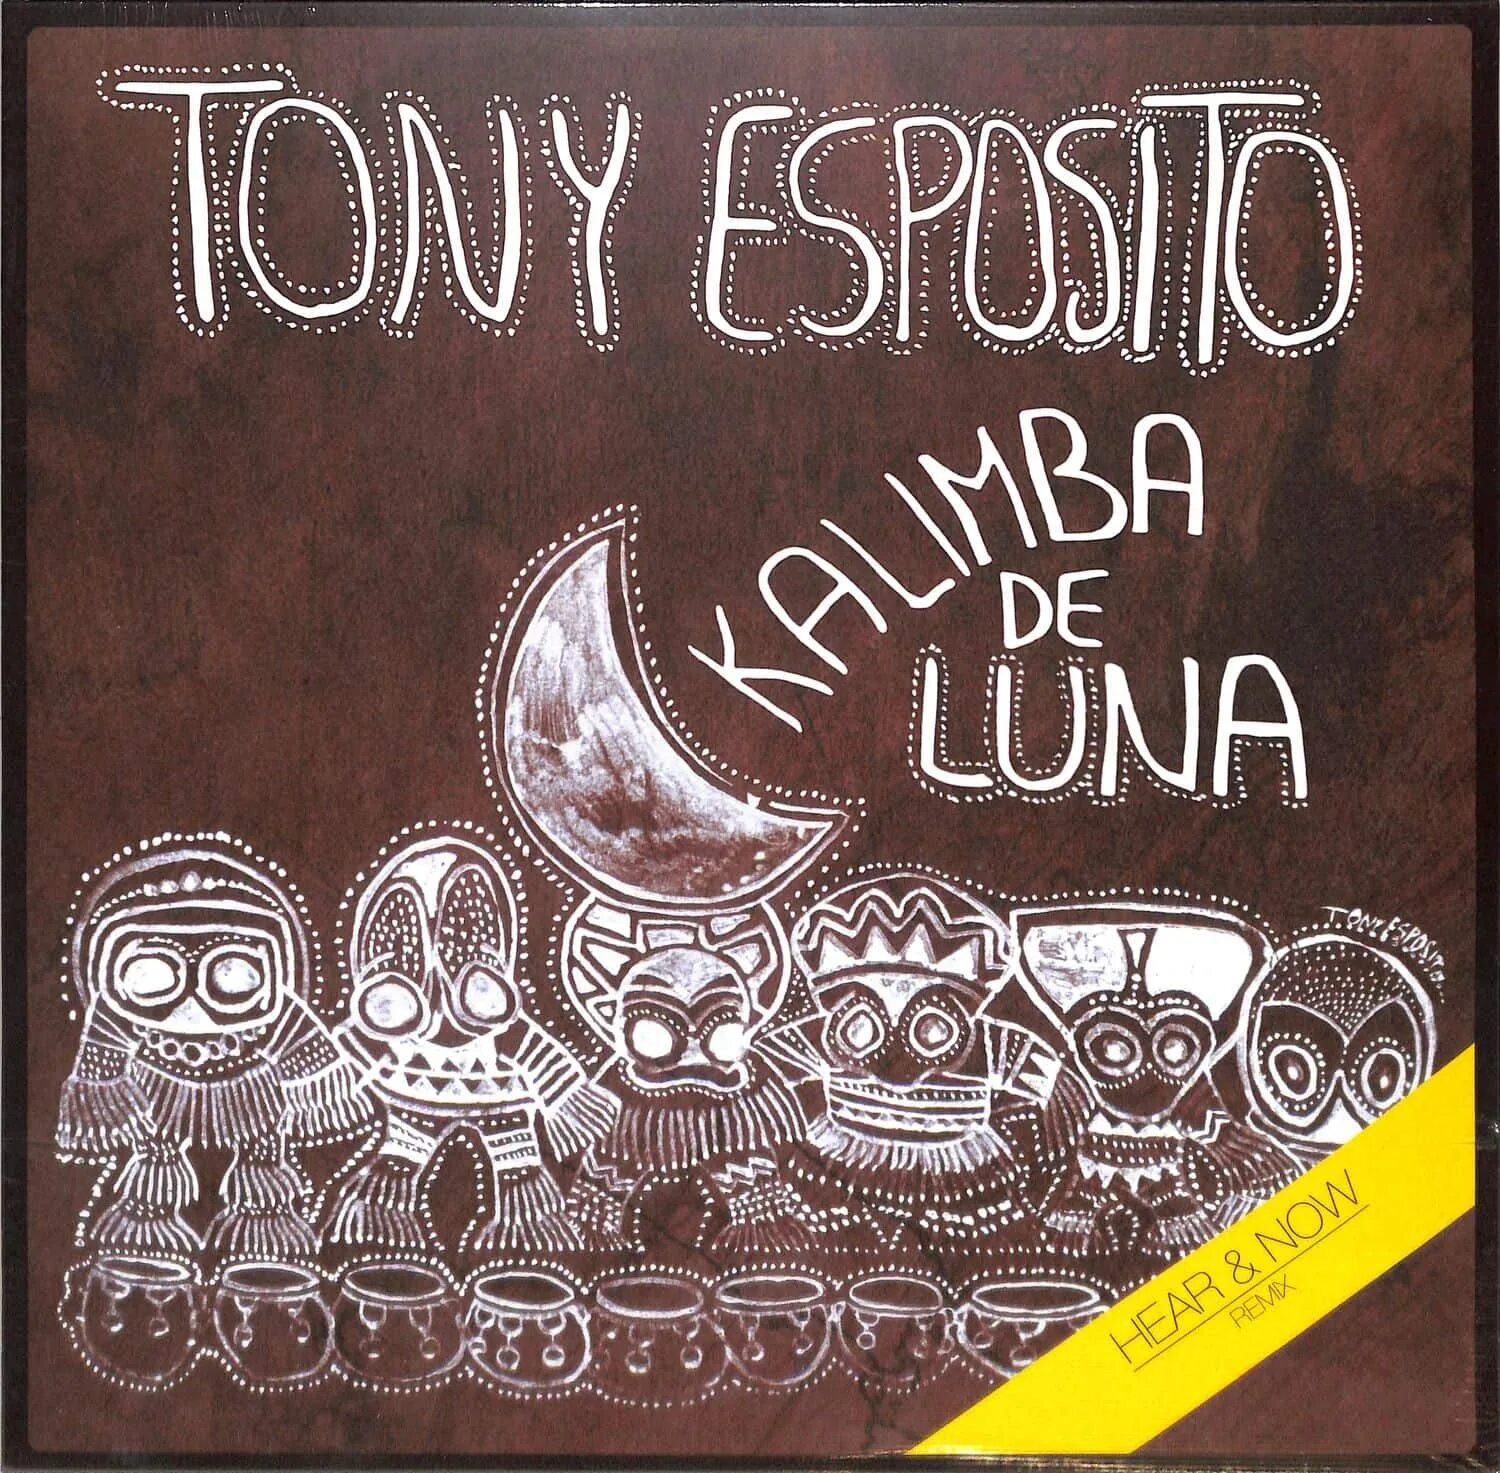 Kalimba de Luna Тони Эспозито. Toni Esposito - Kalimba de Luna- фото. 03. Tony Esposito - Kalimba de Luna. Tony Esposito - Kalimba de Luna Ноты.